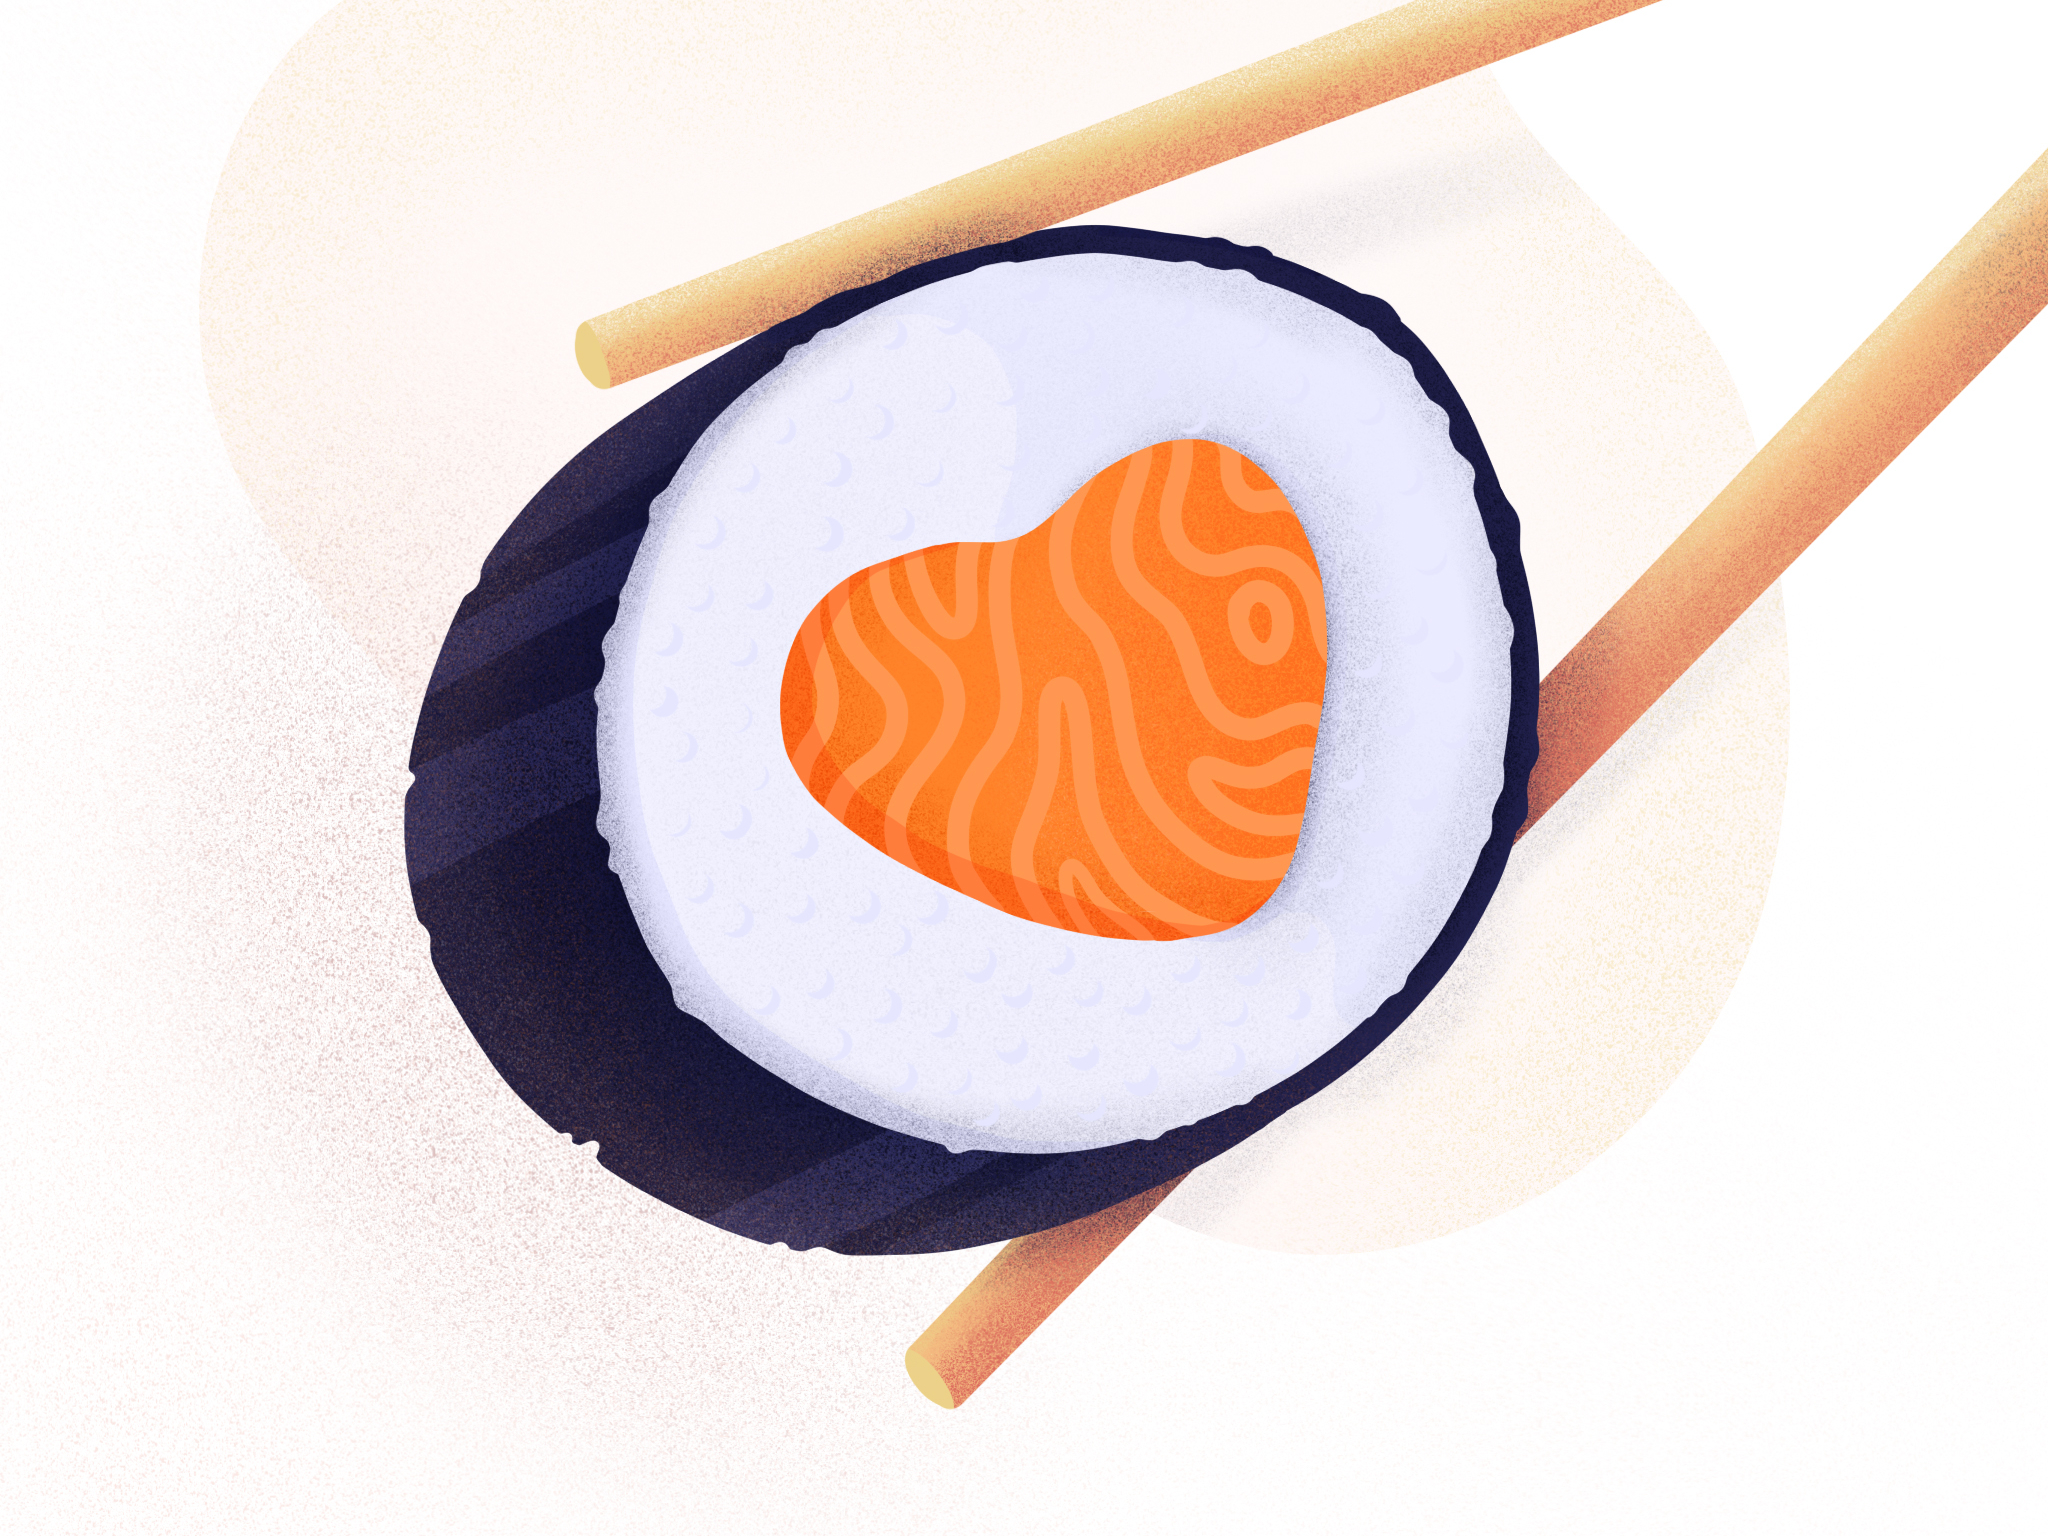 sushi-by-justas-galaburda-on-dribbble